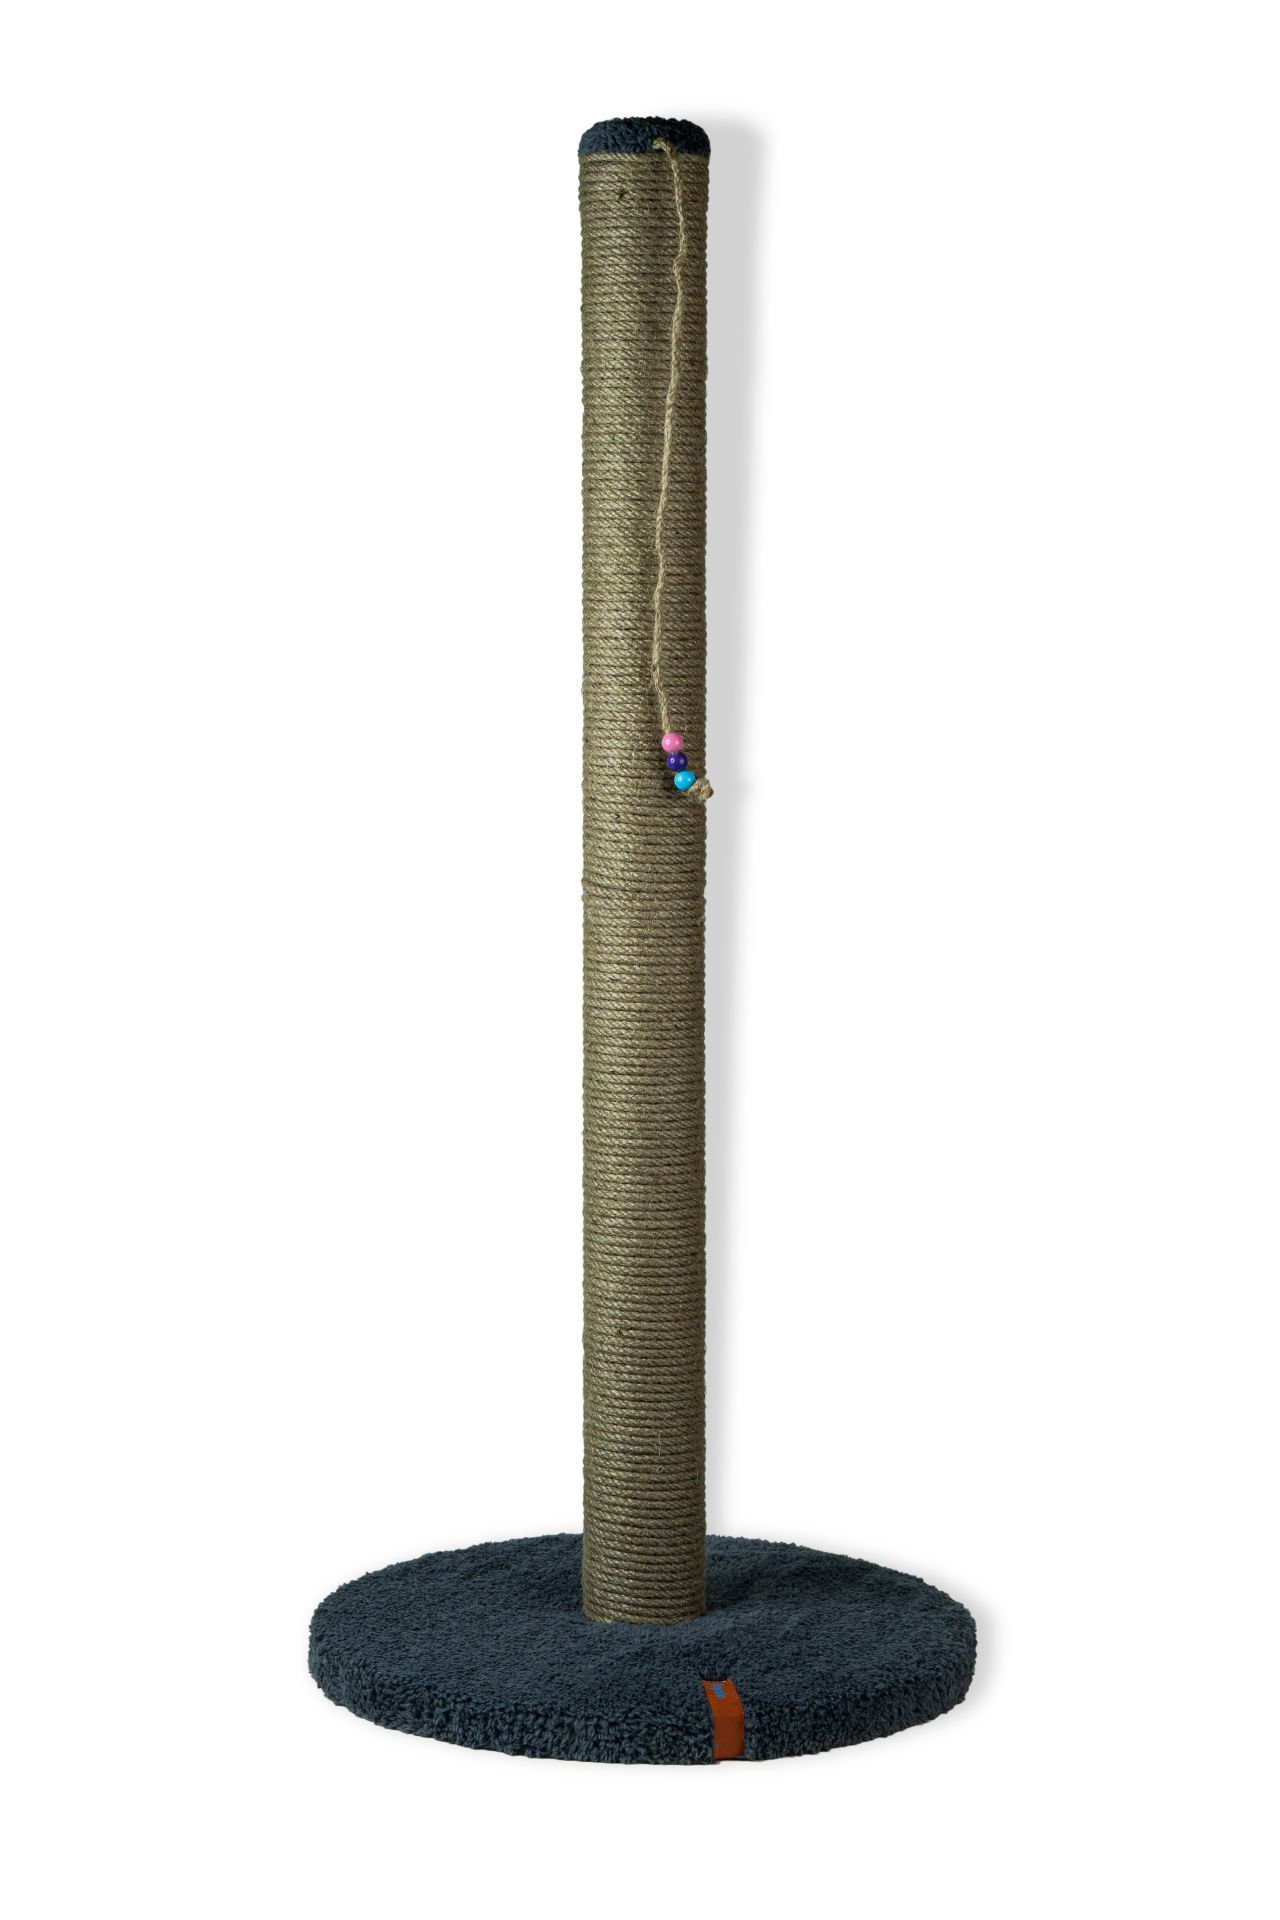 Pugalo 80 cm Catnipli Uzun Kedi Tırmalama Tahtası Antrasit